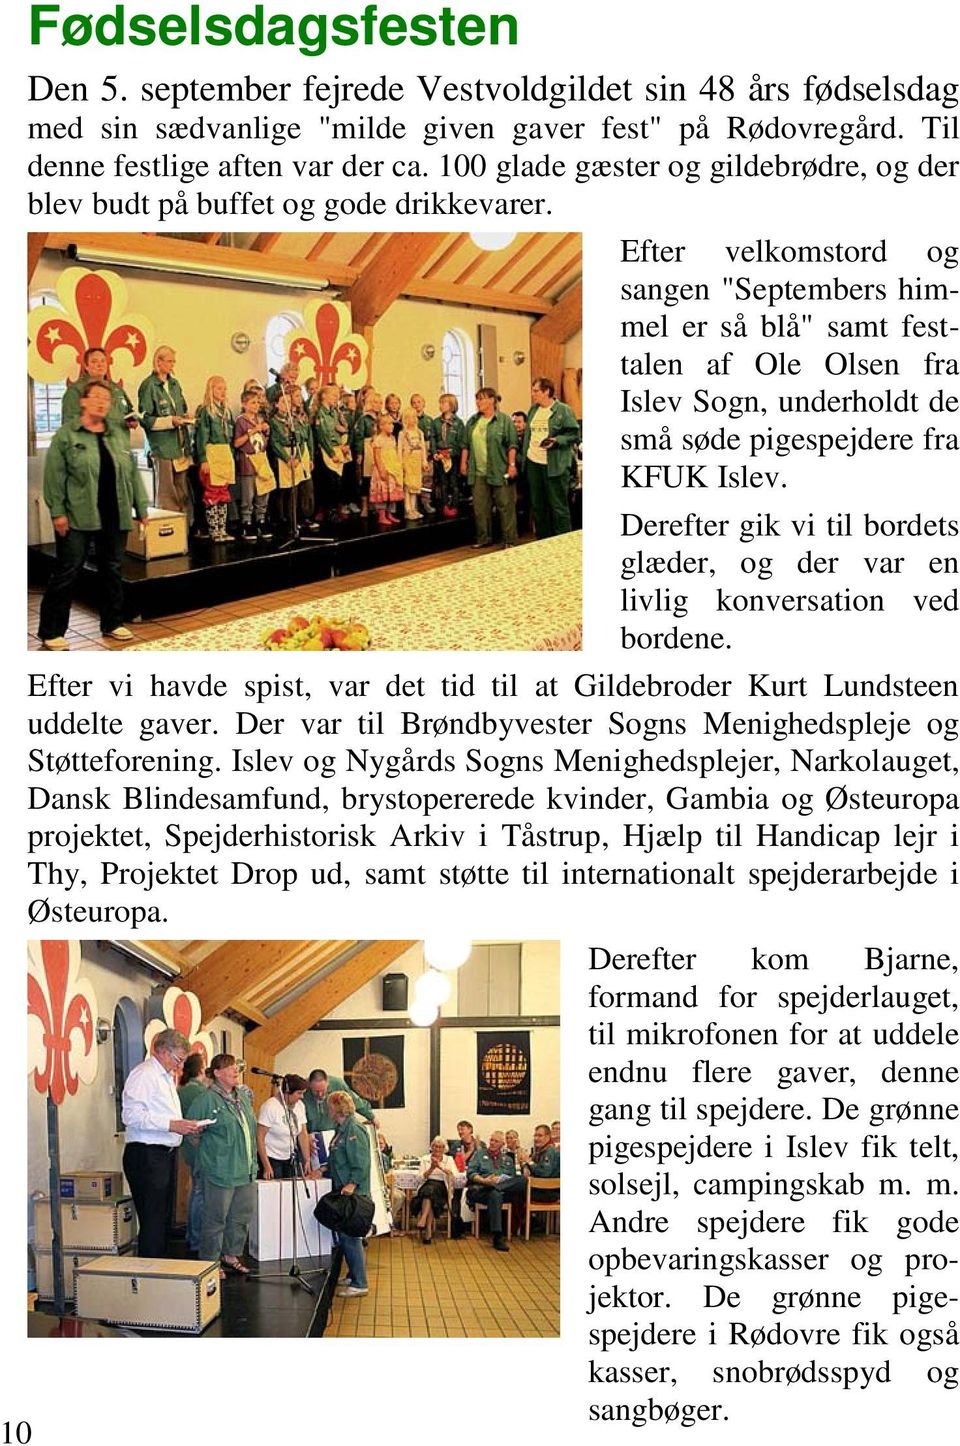 Efter velkomstord og sangen "Septembers himmel er så blå" samt festtalen af Ole Olsen fra Islev Sogn, underholdt de små søde pigespejdere fra KFUK Islev.